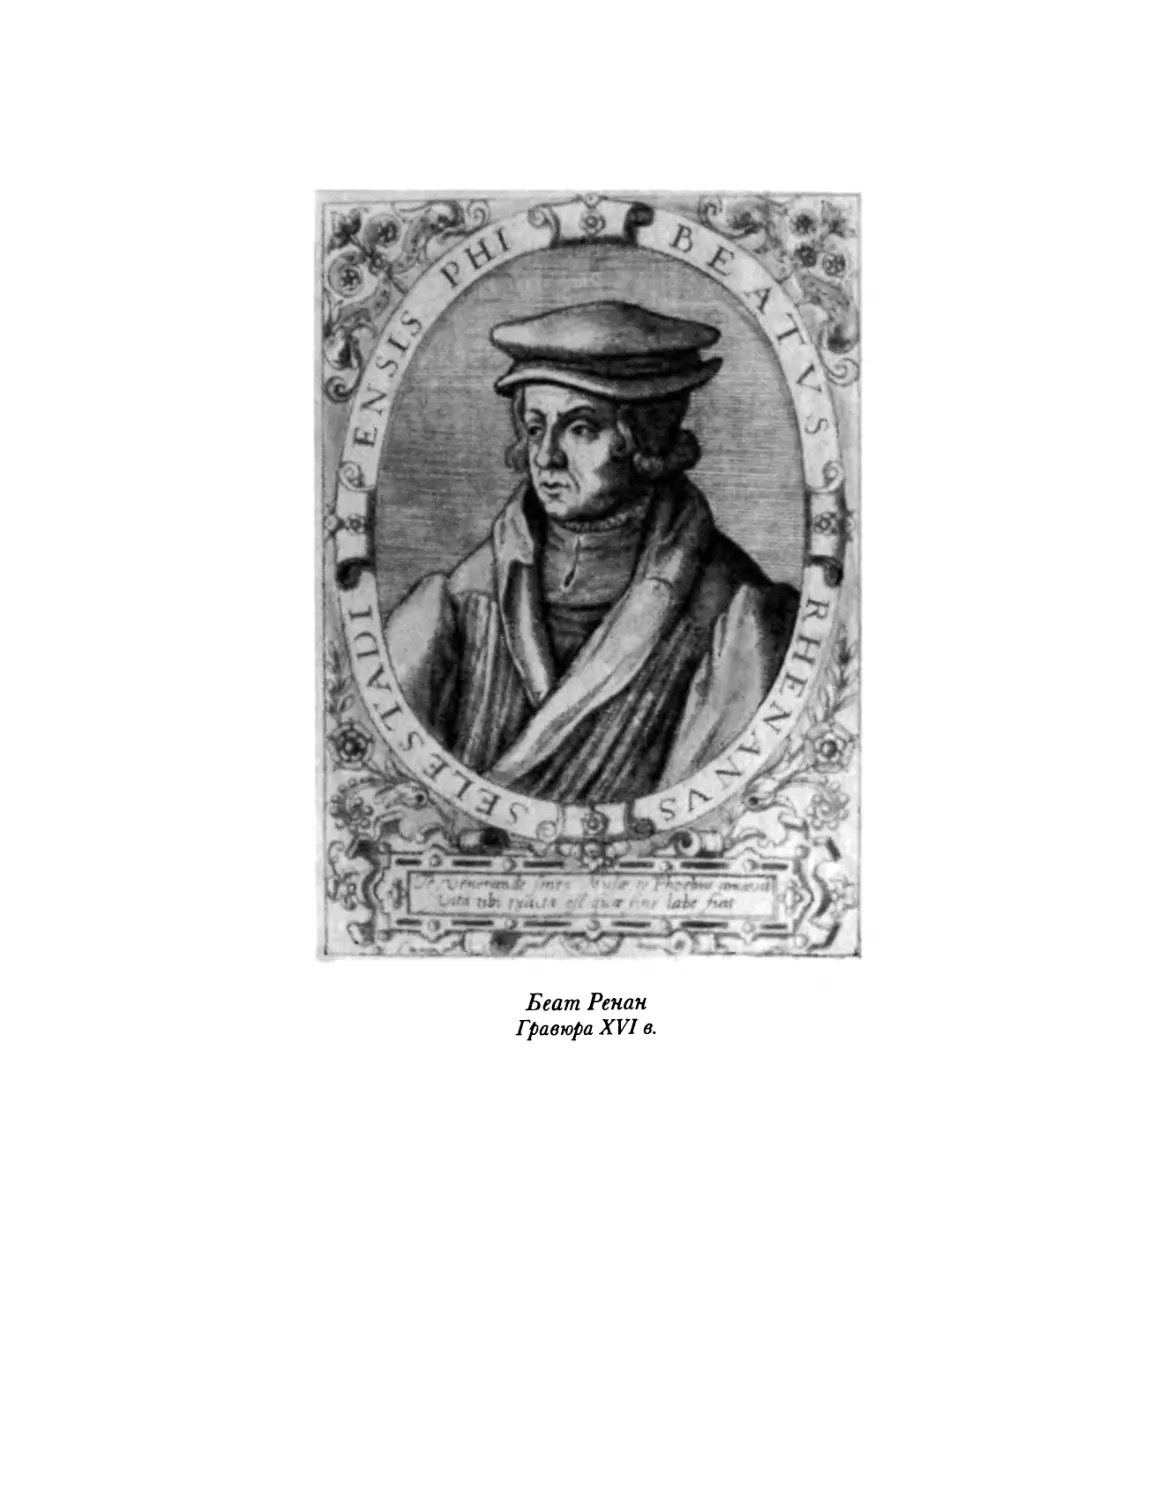 Титульный лист издания «Эпигралил» Томаса Мора, напечатанного в Базеле, в типографии Иоганна Фробена в декабре 1518 г.